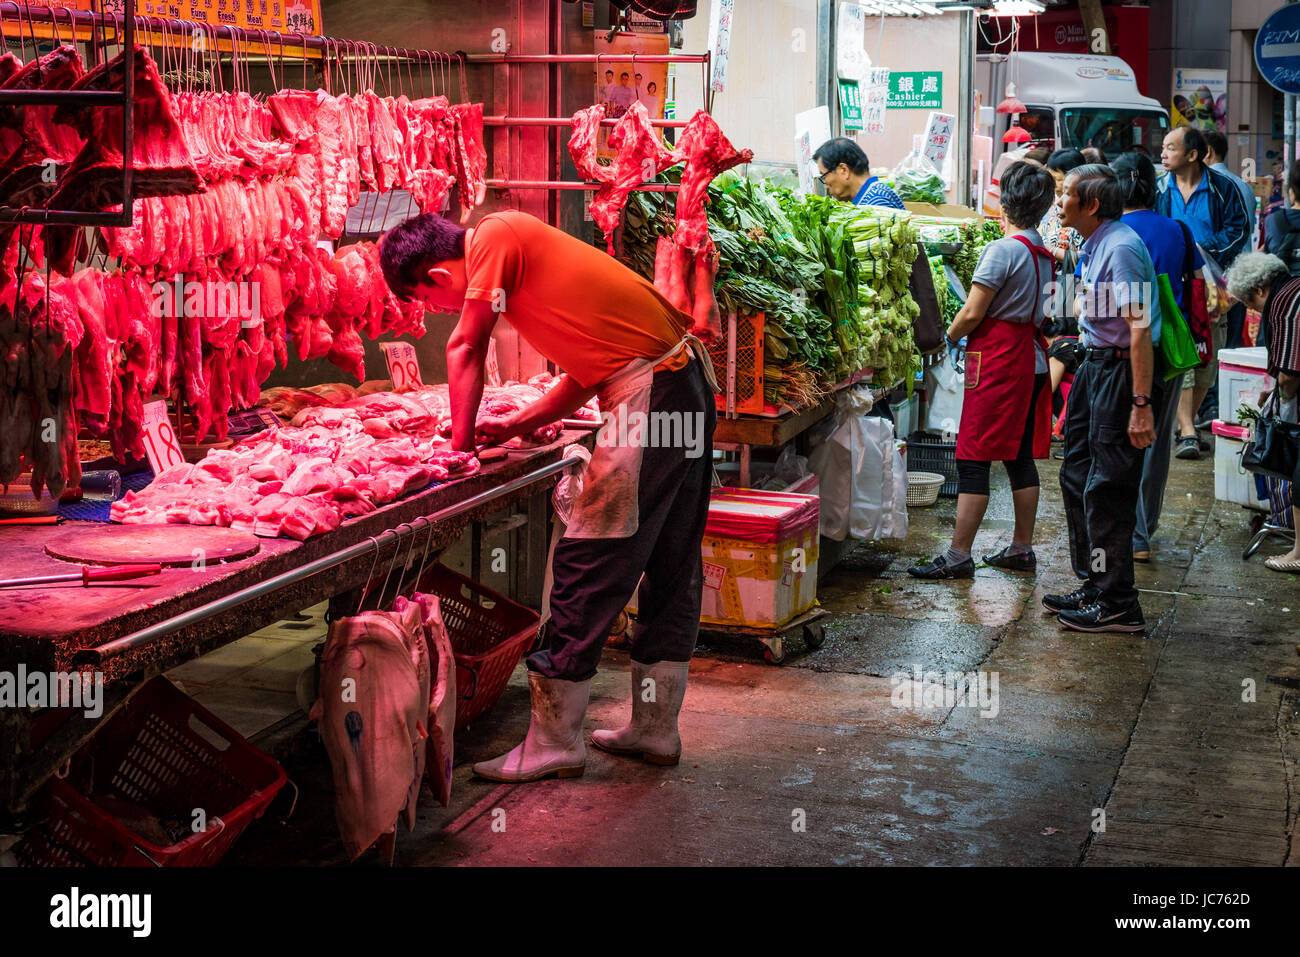 Rote Lichter markieren Sie frische Fleischstücke auf der Metzgerei Stall. Schausteller bei der Arbeit mit Kunden zu interagieren. Stockfoto